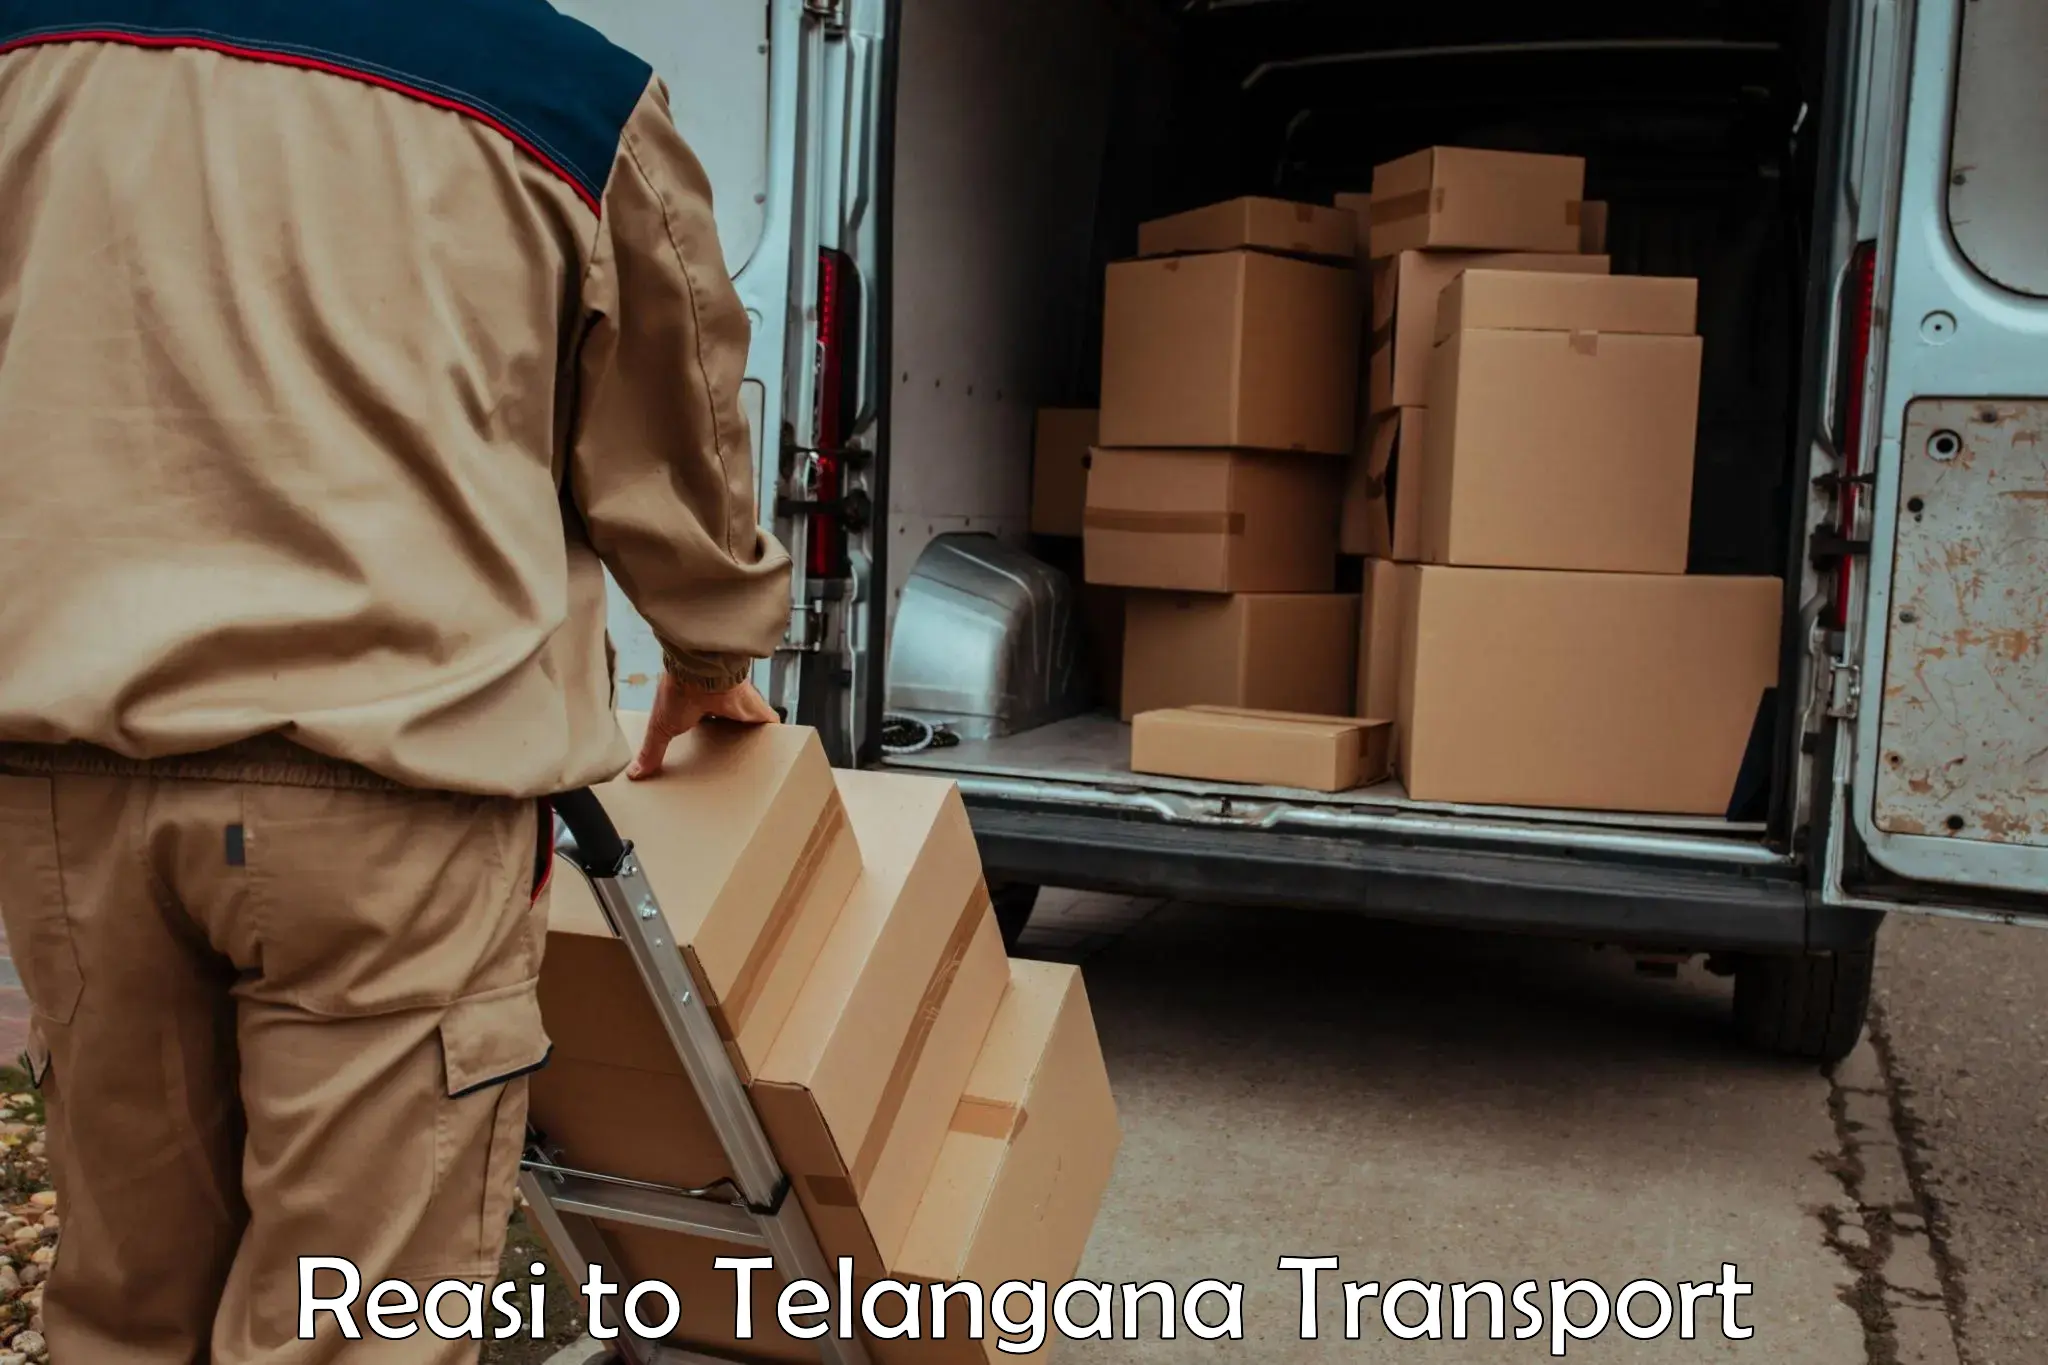 Transport in sharing Reasi to Gangadhara